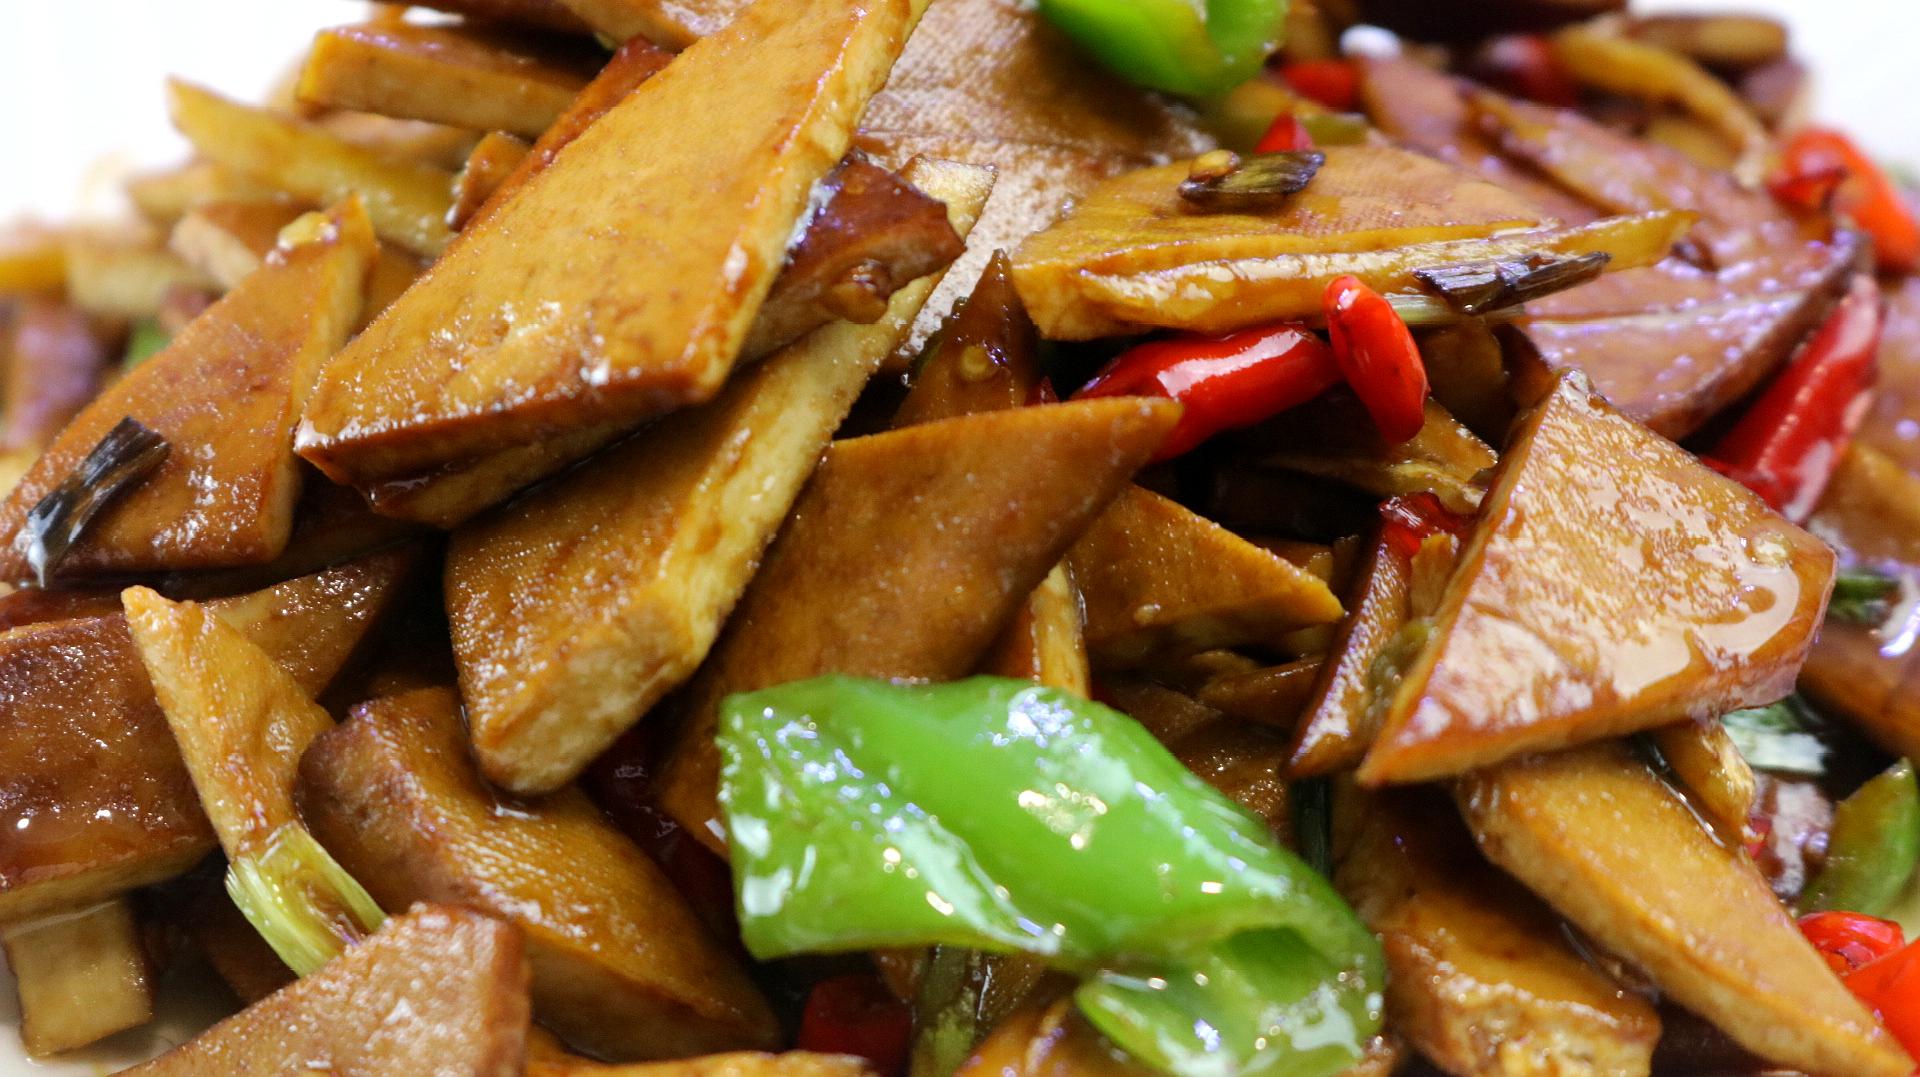 怎样做葱油鸡腿,红烧黄花鱼,双菇炒双椒等色香味俱佳的热菜?